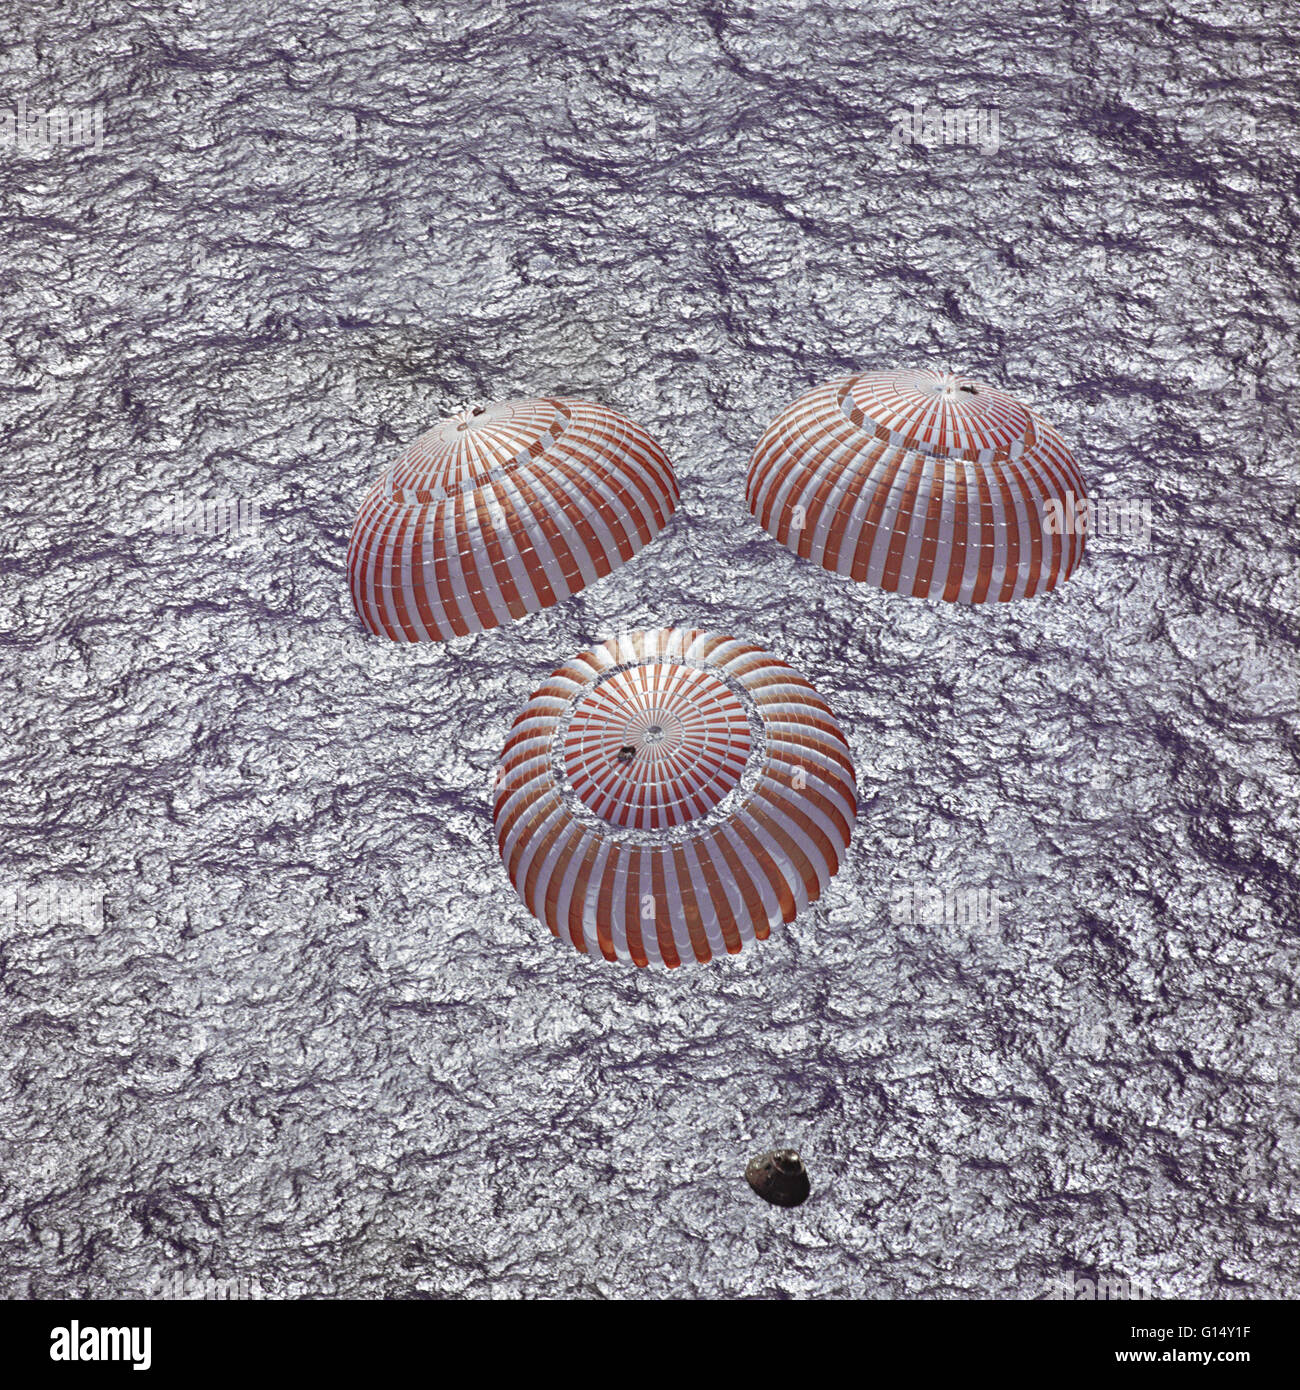 L'Apollo 16 modulo di comando, con gli astronauti John W. Young, Thomas K. Mattingly II e Charles M. Duca Jr. a bordo, si avvicina splashdown nell'Oceano Pacifico centrale a concludere con successo un atterraggio lunare di missione. Questo overhead è stata scattata da un reco Foto Stock